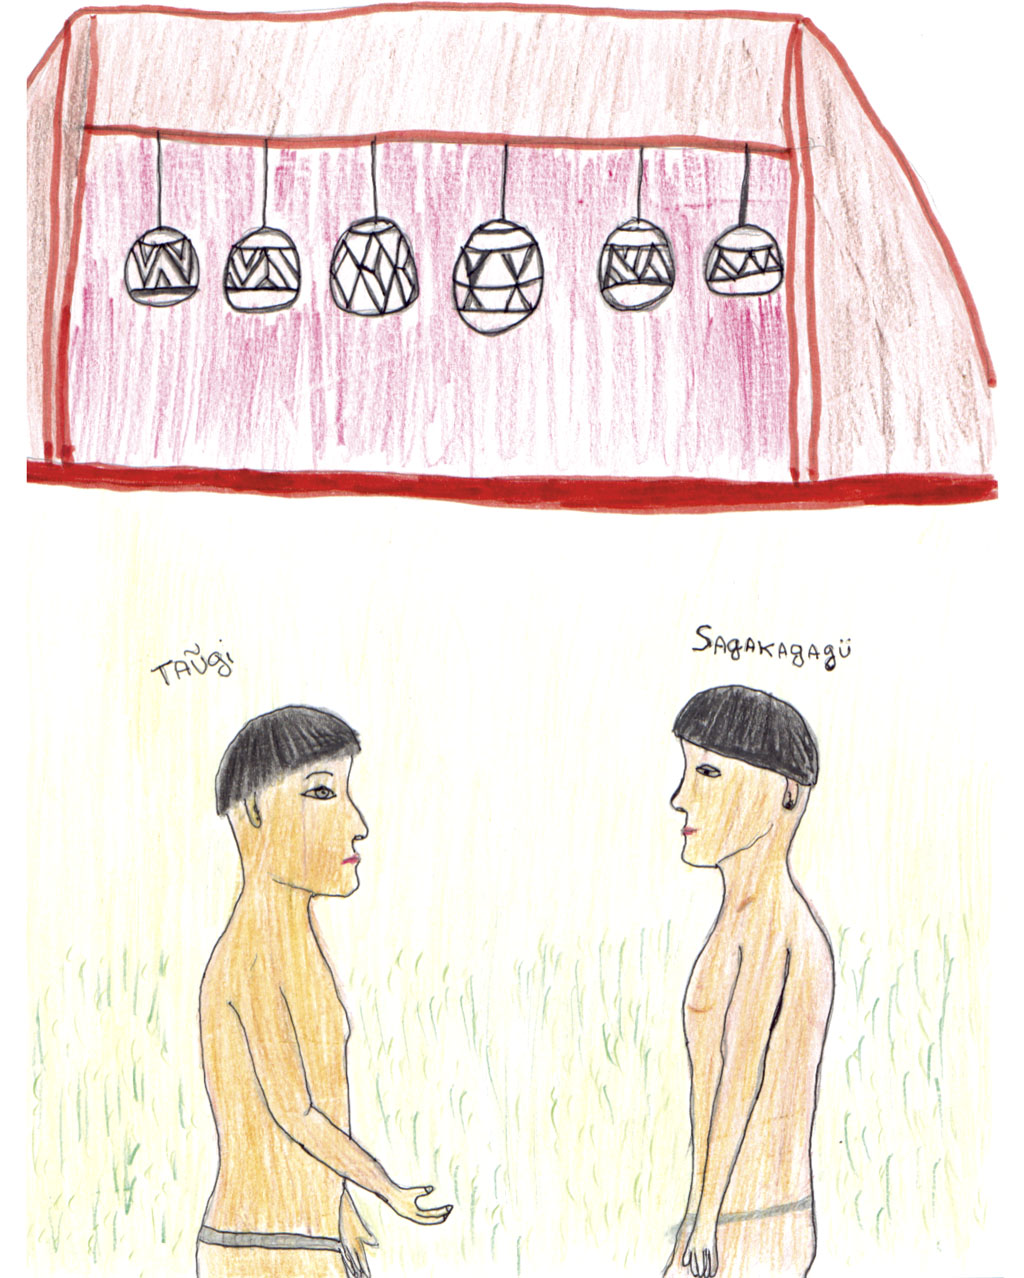 Ilustração da visita do deus Taũgi a Sagakagagü, em sua aldeia. Desenho: Sepé Kuikuro, 2002